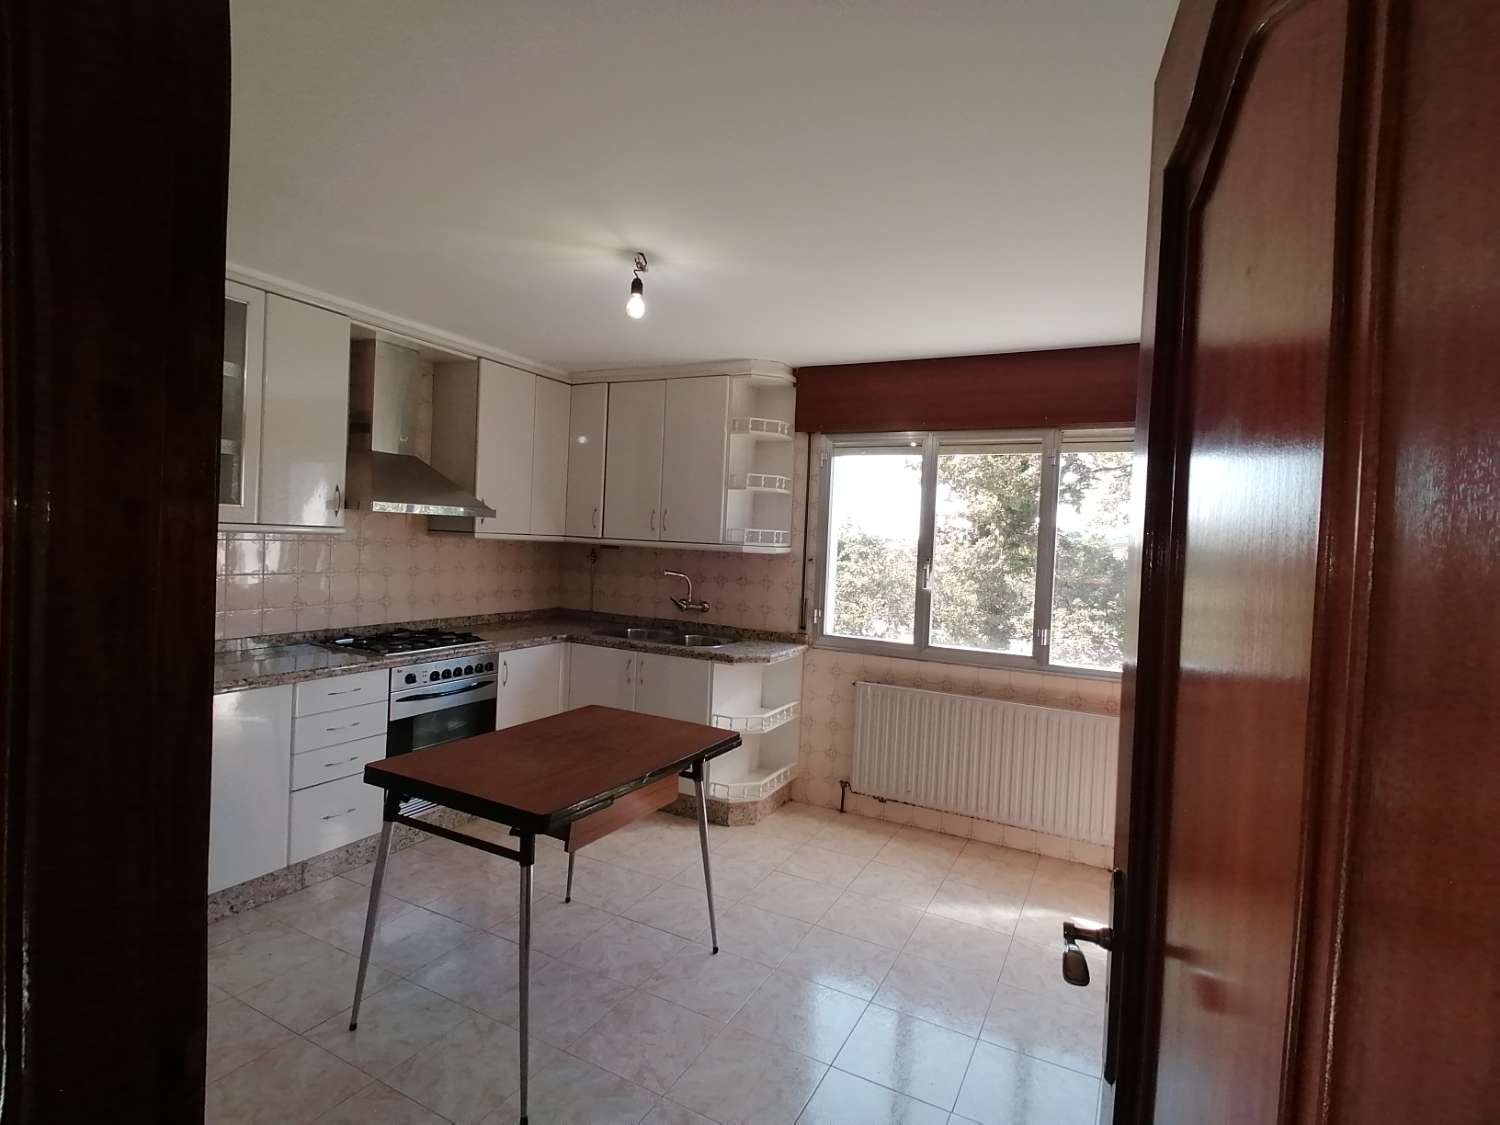 Pontevedra : A7134 : Maison avec finca à vendre à 4 kms de Pontevedra...